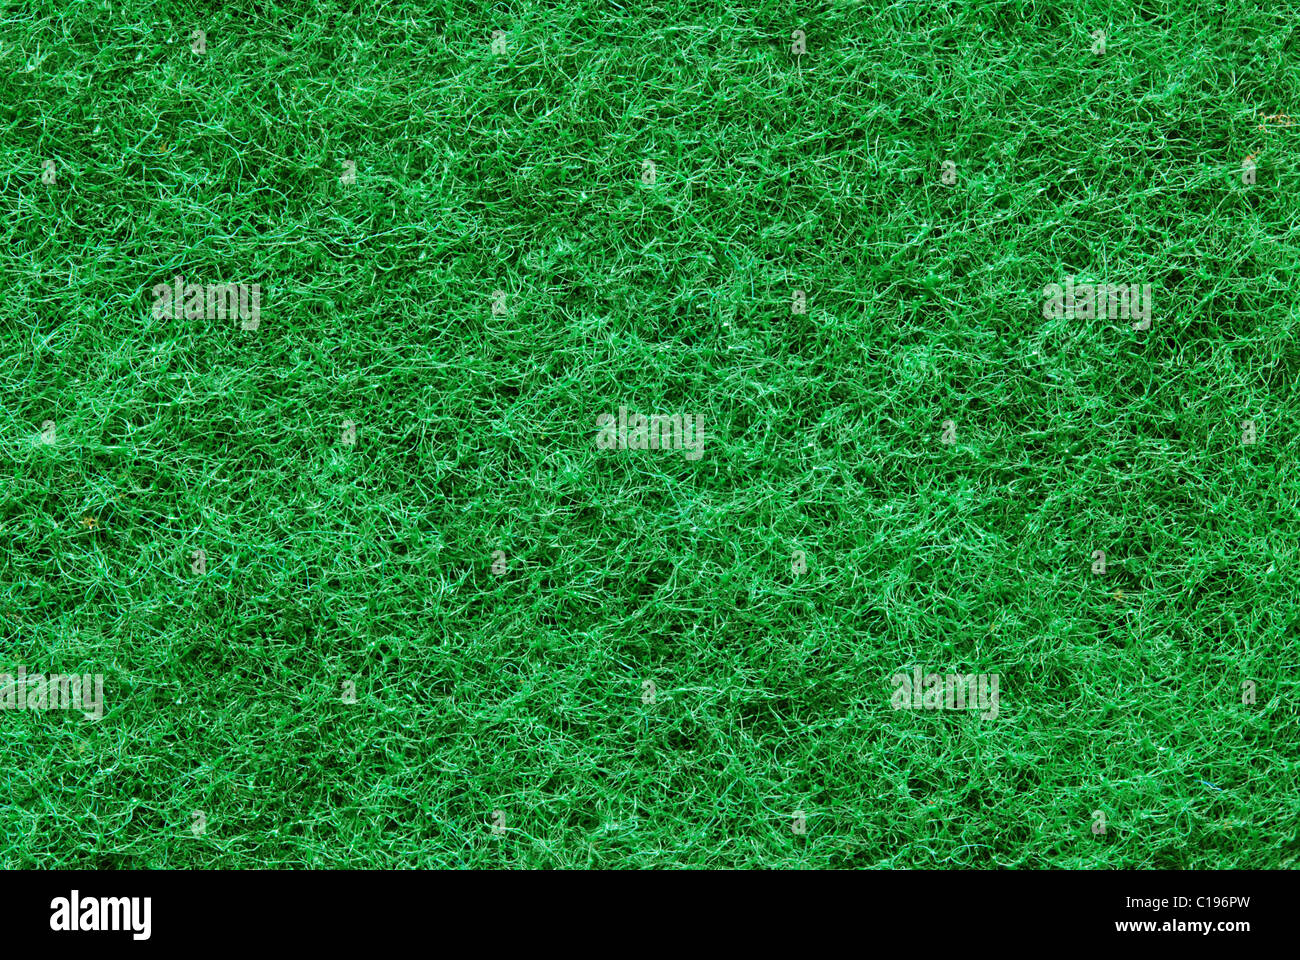 Immagine macro di verde sintetico meterial fibroso Foto Stock